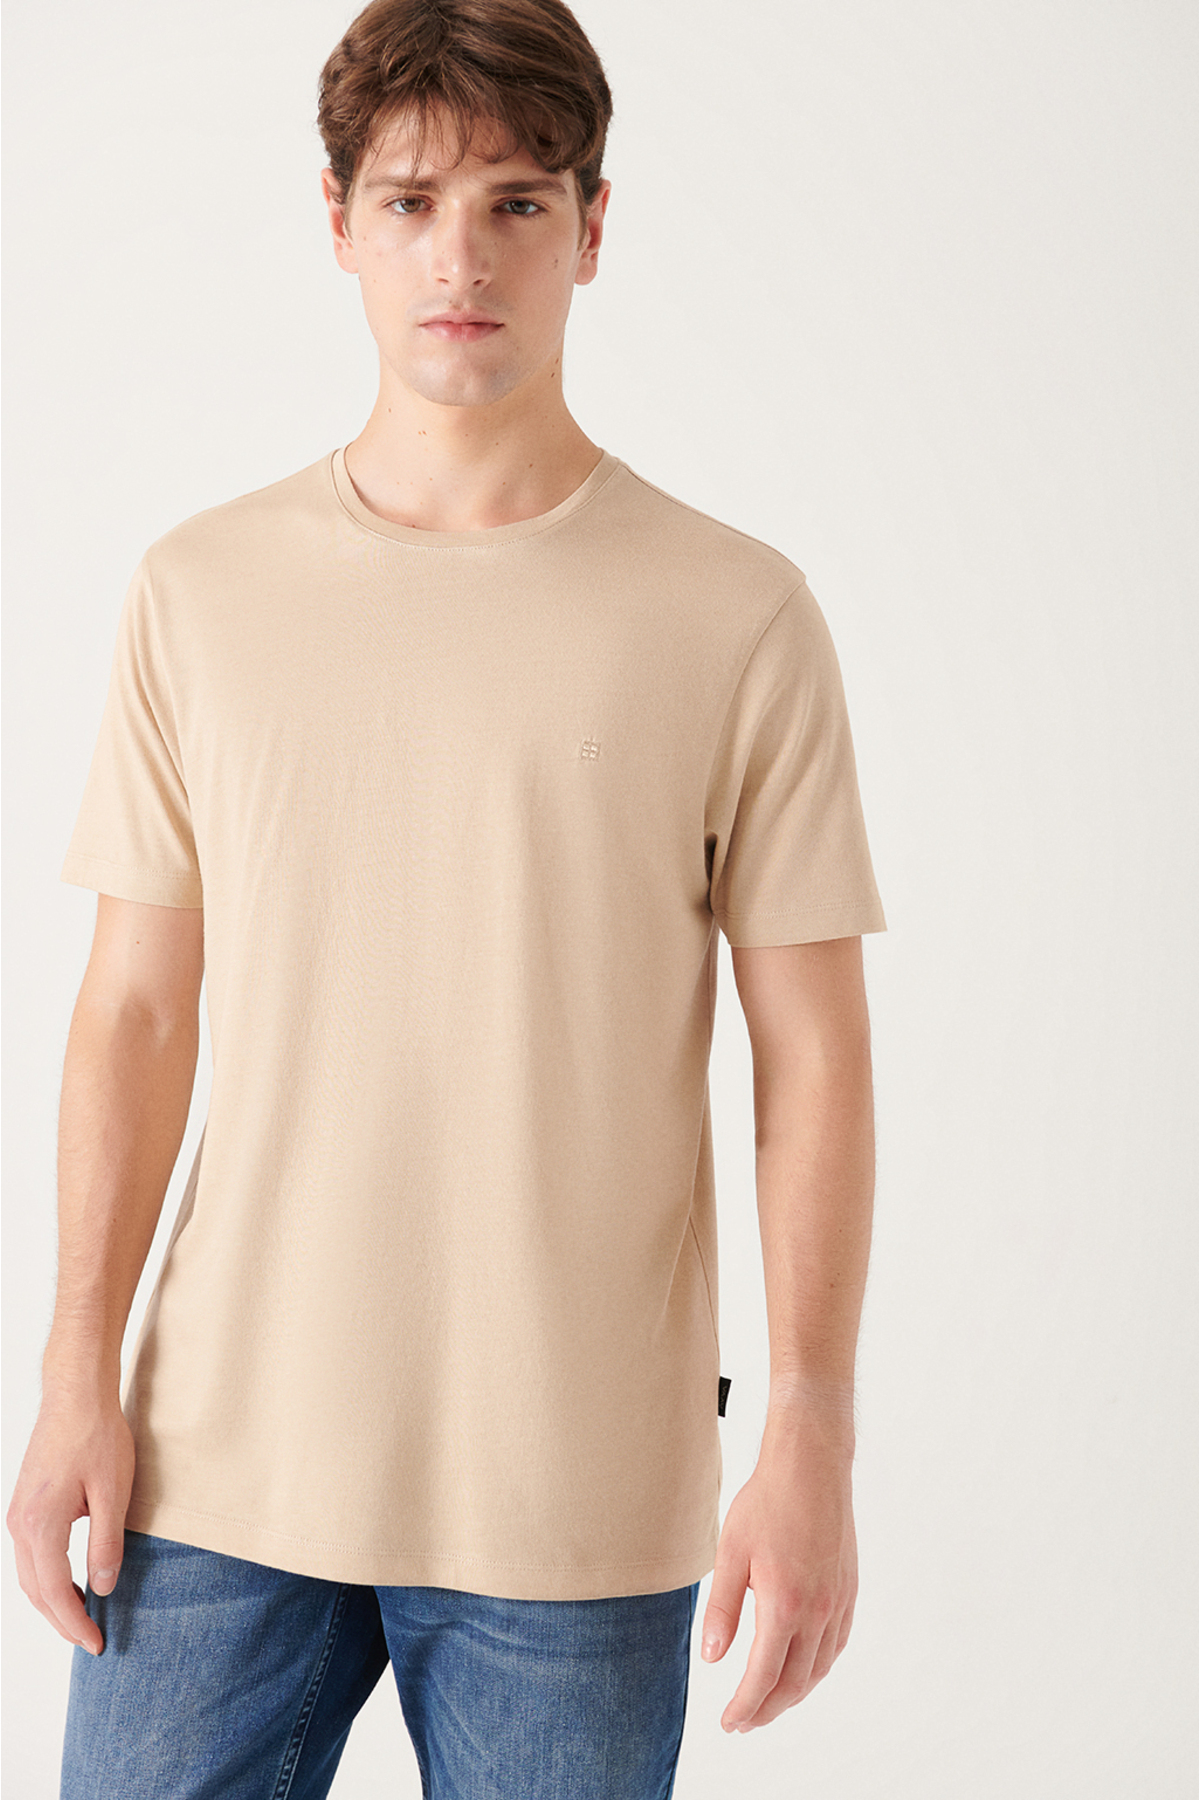 Levně Avva Men's Beige Ultrasoft Crew Neck Cotton Slim Fit Slim-Fit T-shirt